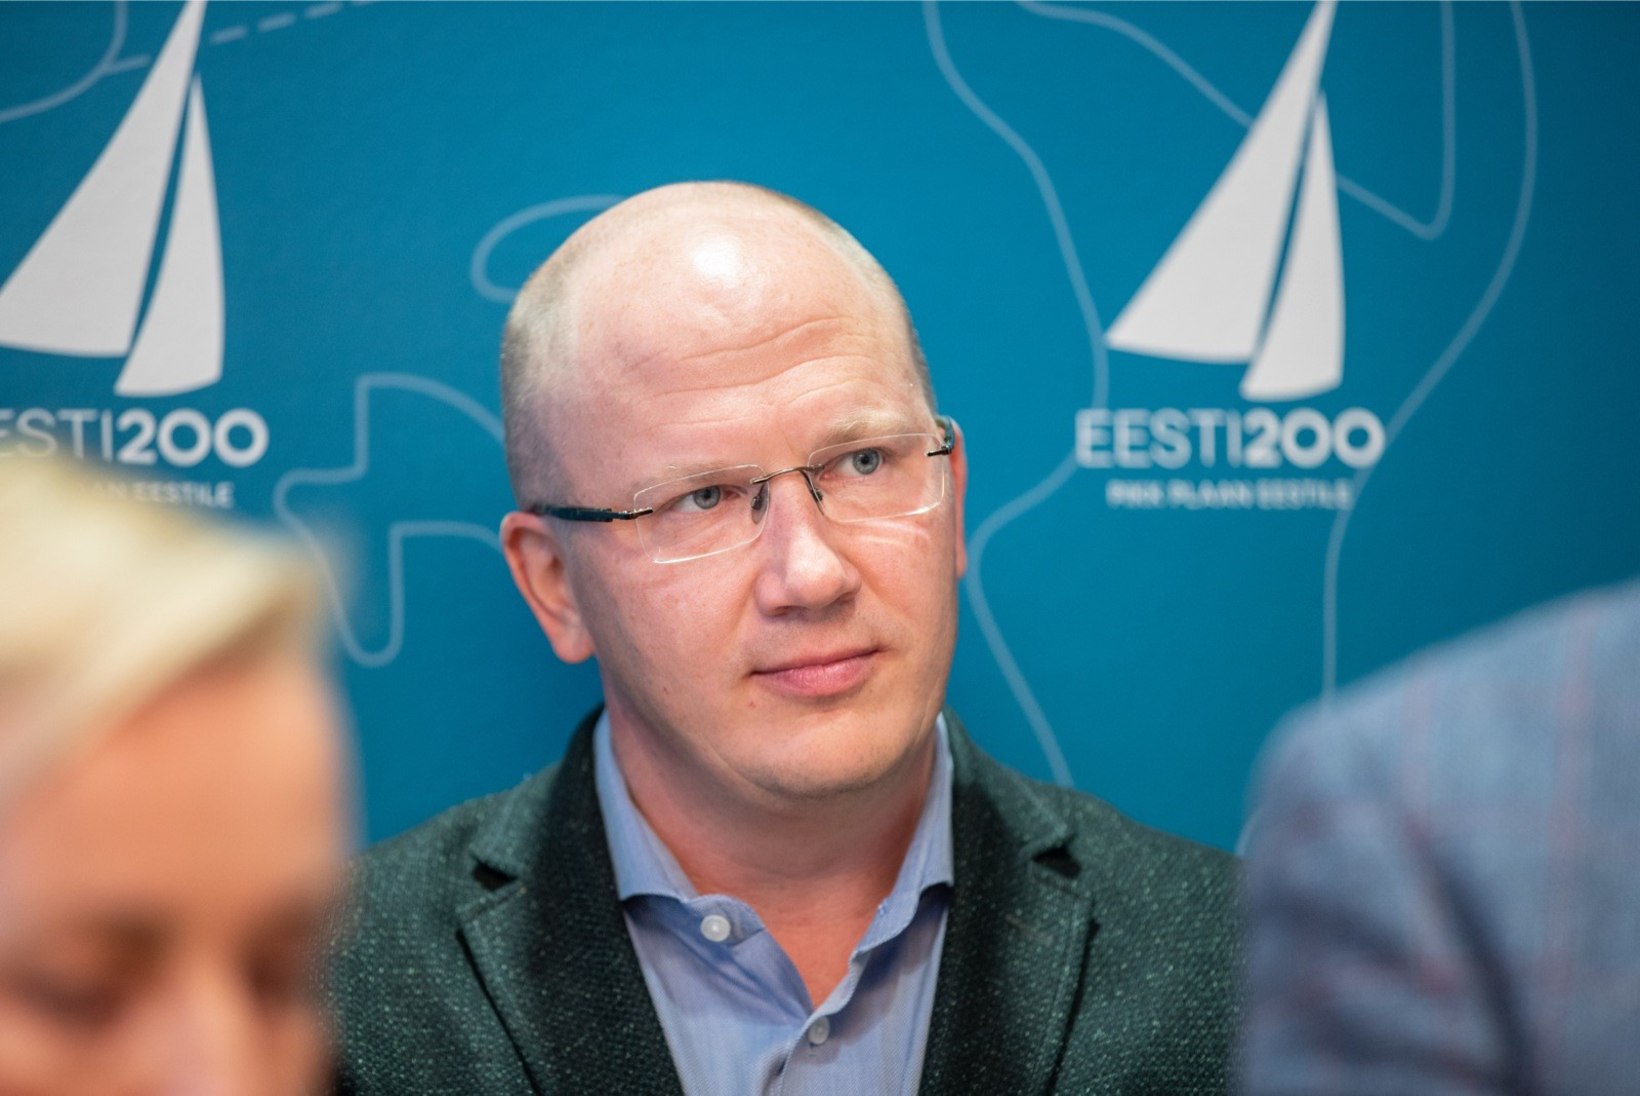 Eesti 200 peaministrikandidaat Priit Alamäe: me ei lähe kellelegi raha lubama. See on vale, riigil ei ole raha